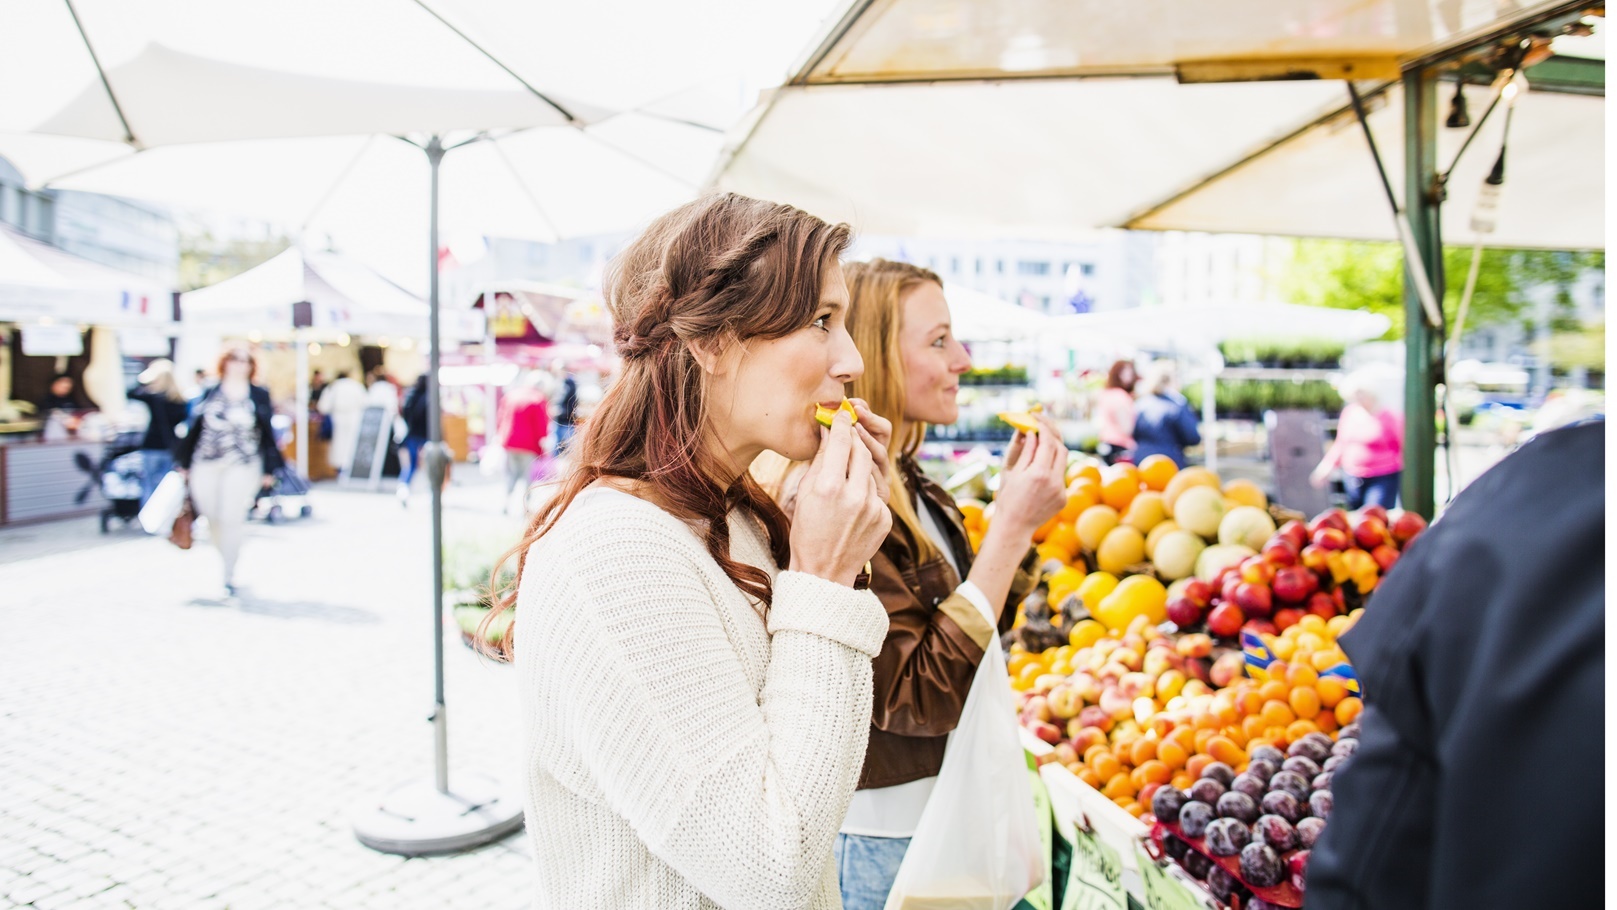 women-eating-fruit-while-shopping-at-market-2021-08-29-00-57-25-utc